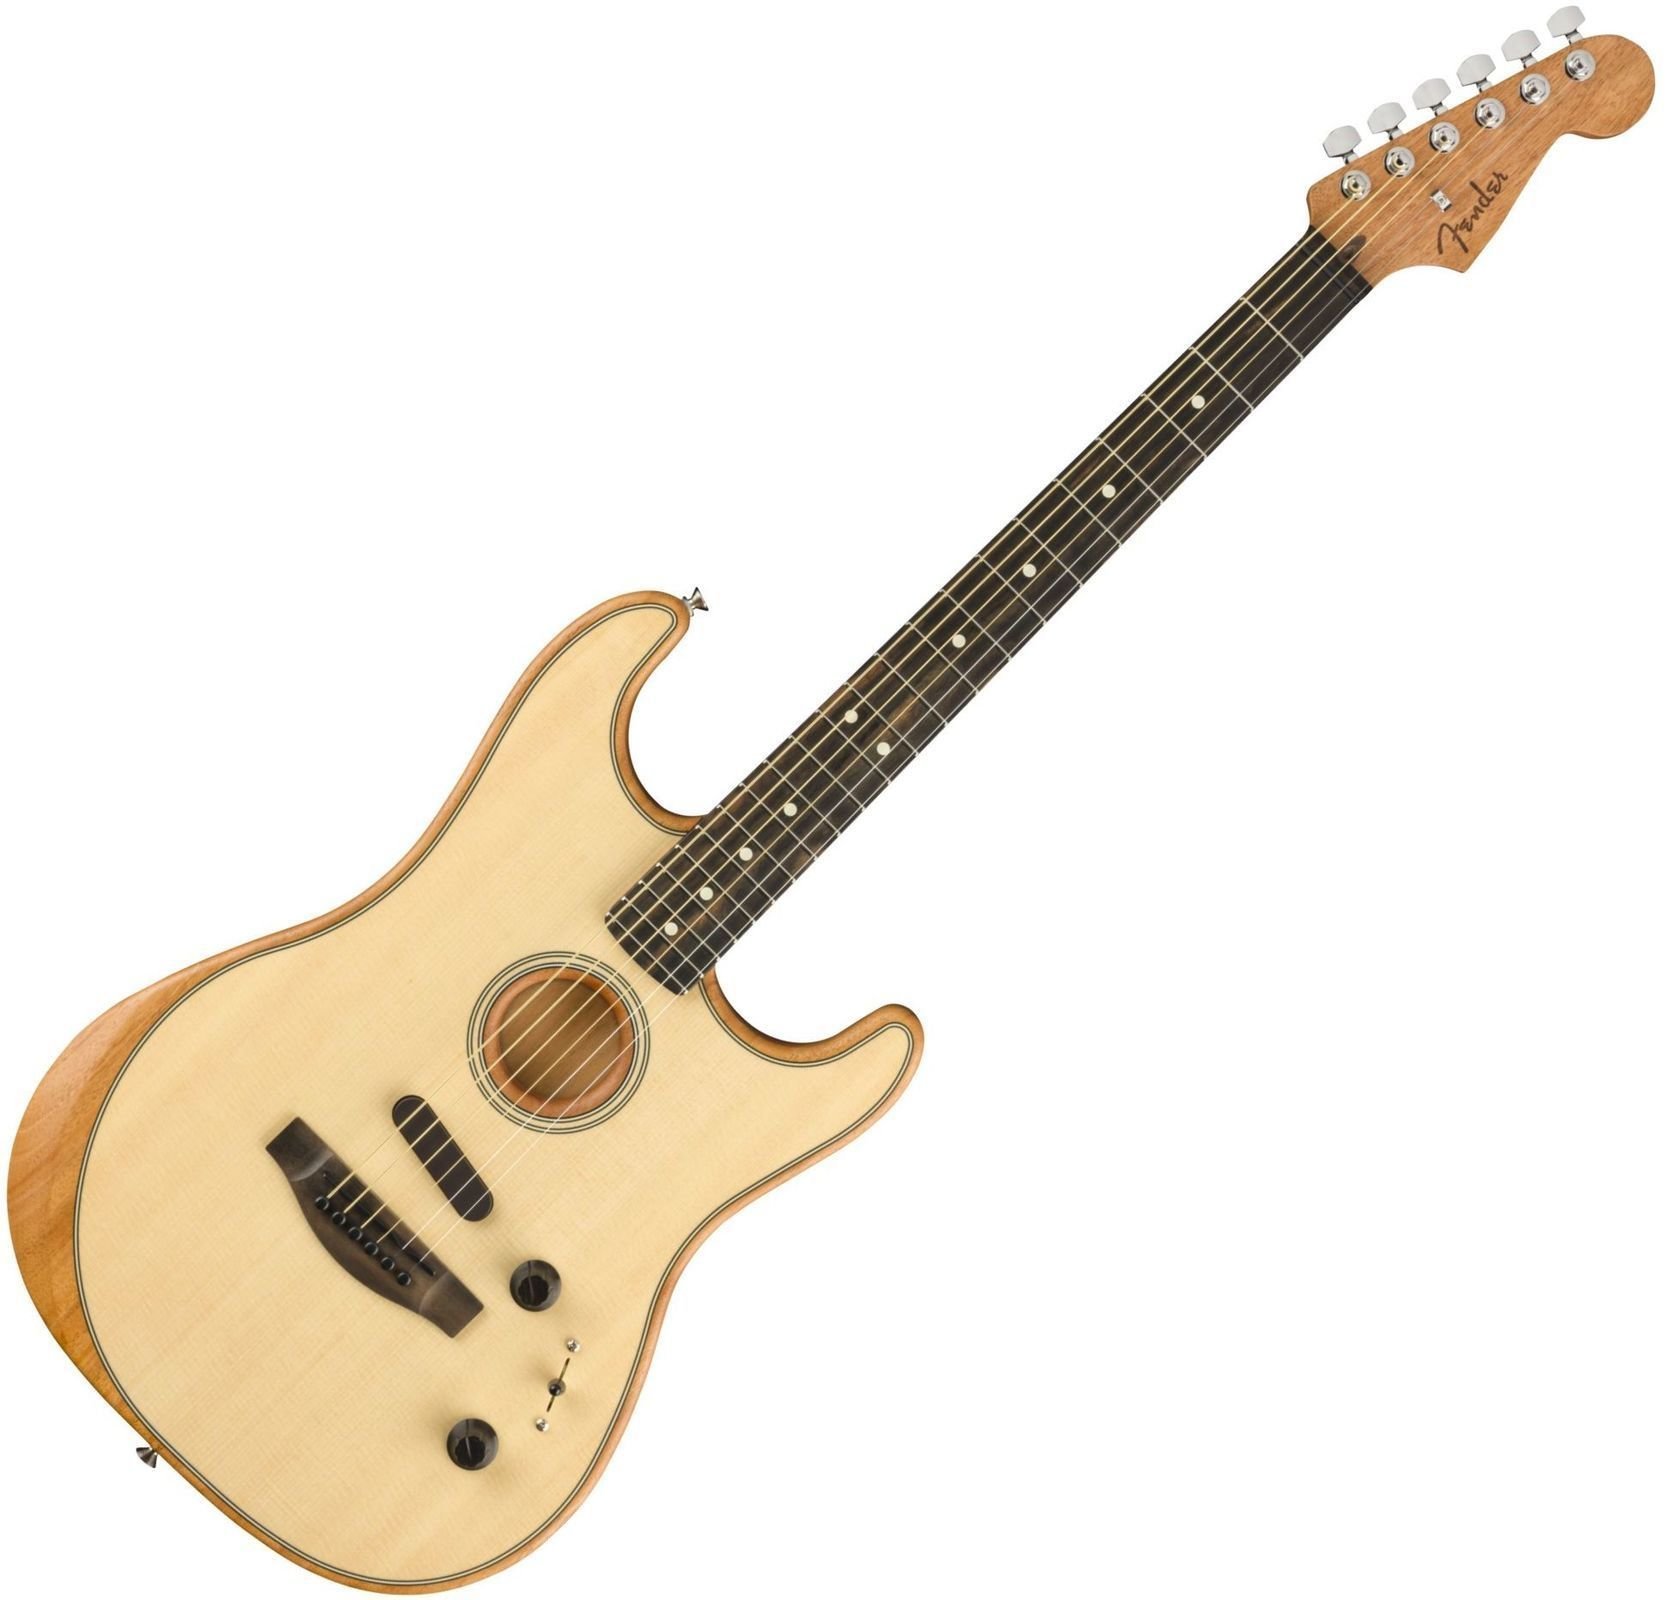 Fender American Acoustasonic Stratocaster Natural